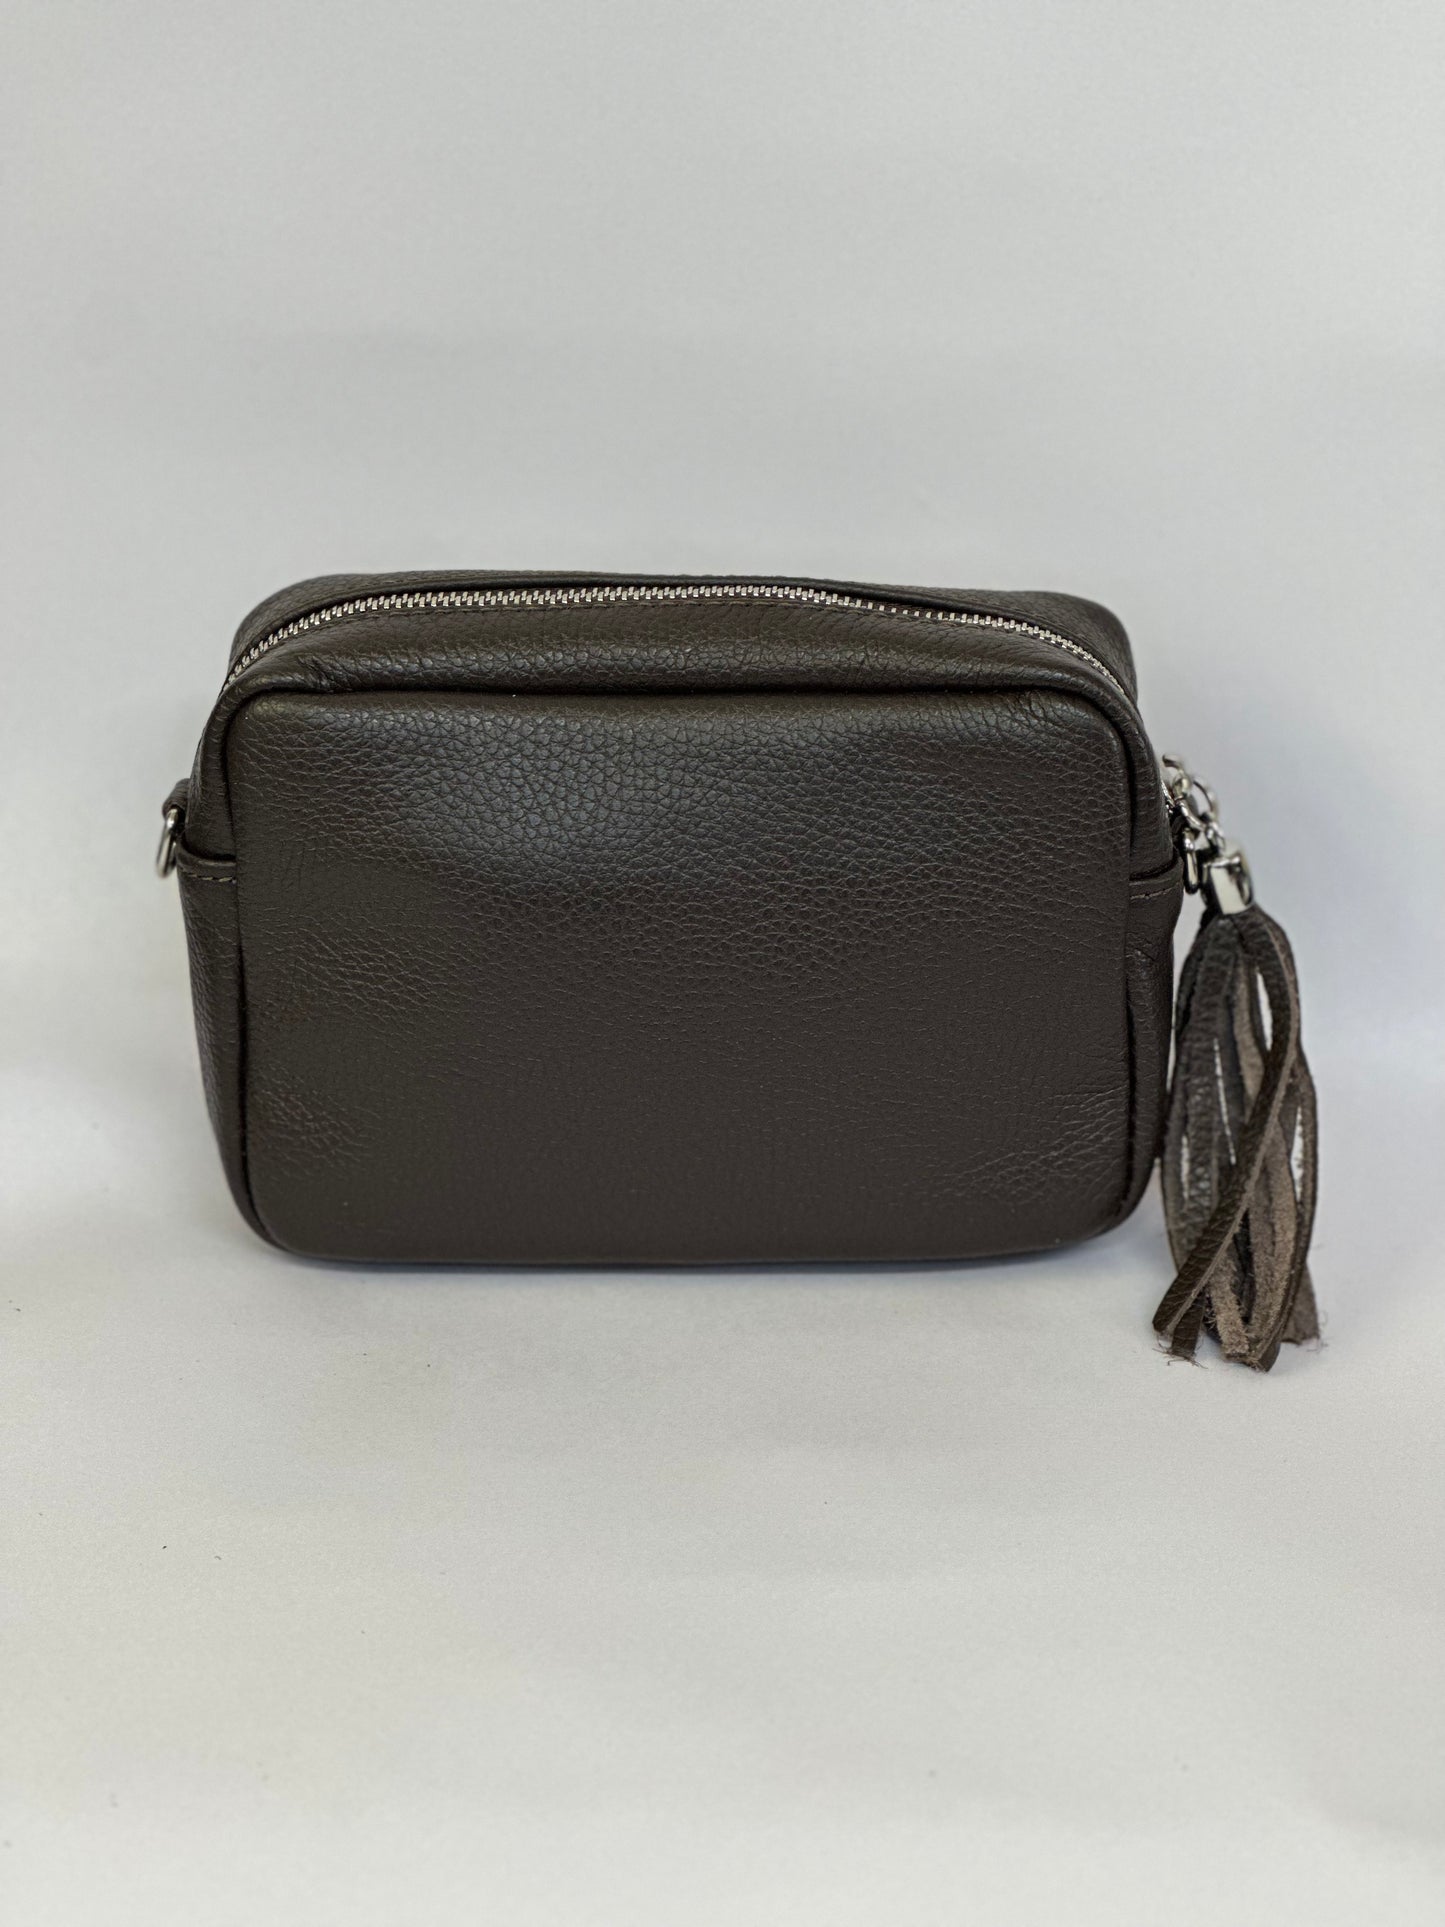 Dark Brown Camera Bag - Real Leather